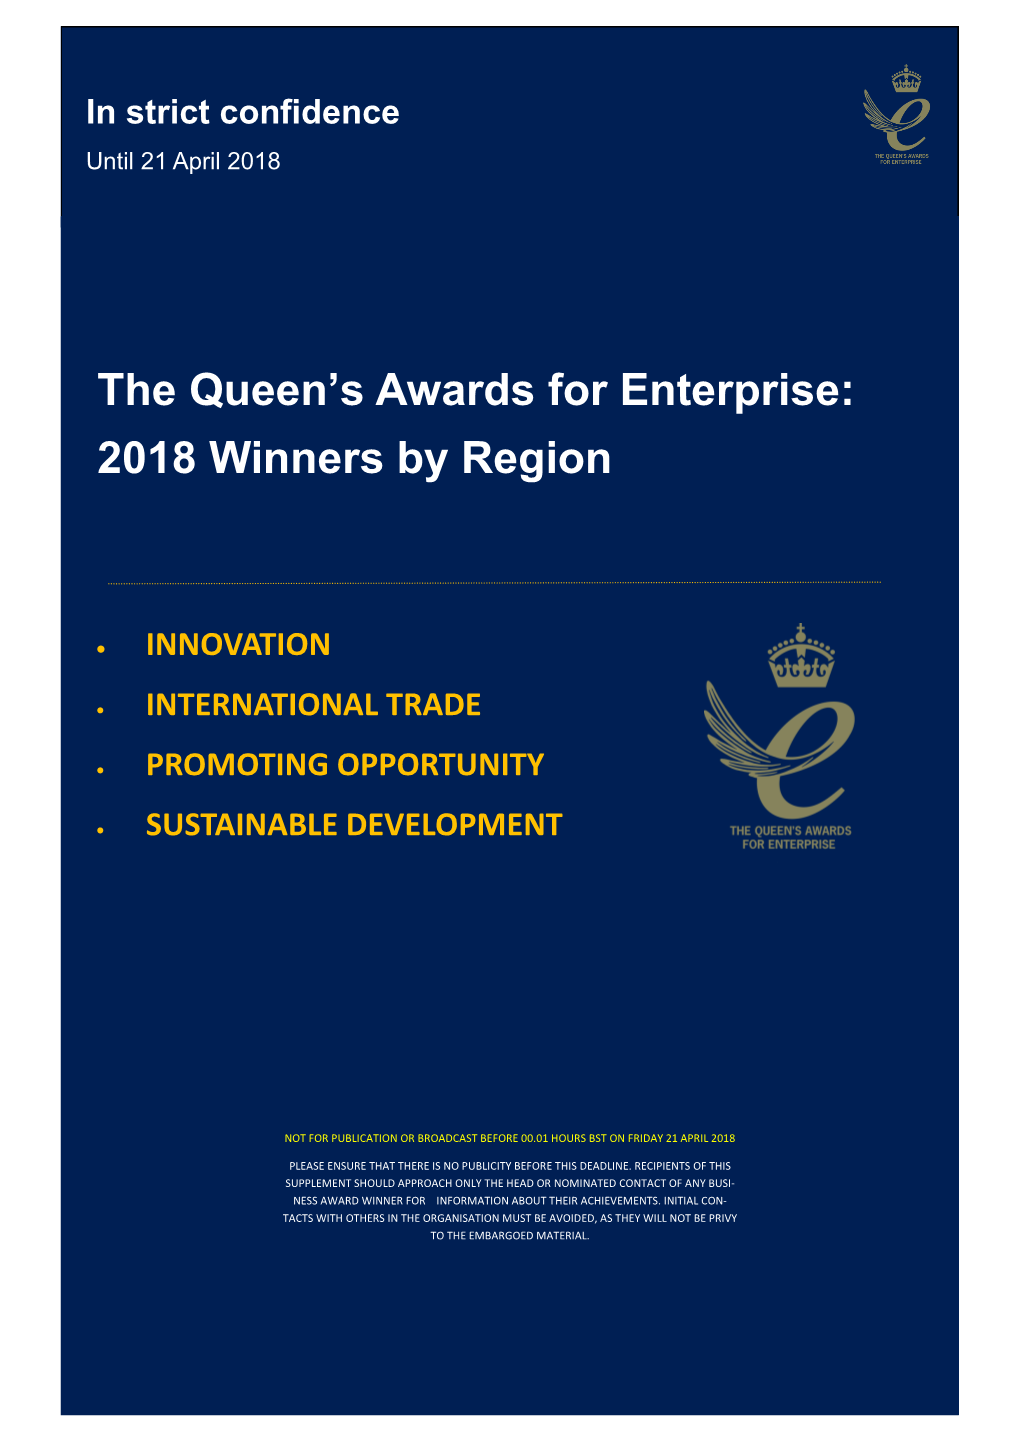 The Queen's Awards for Enterprise 2018 Press Book